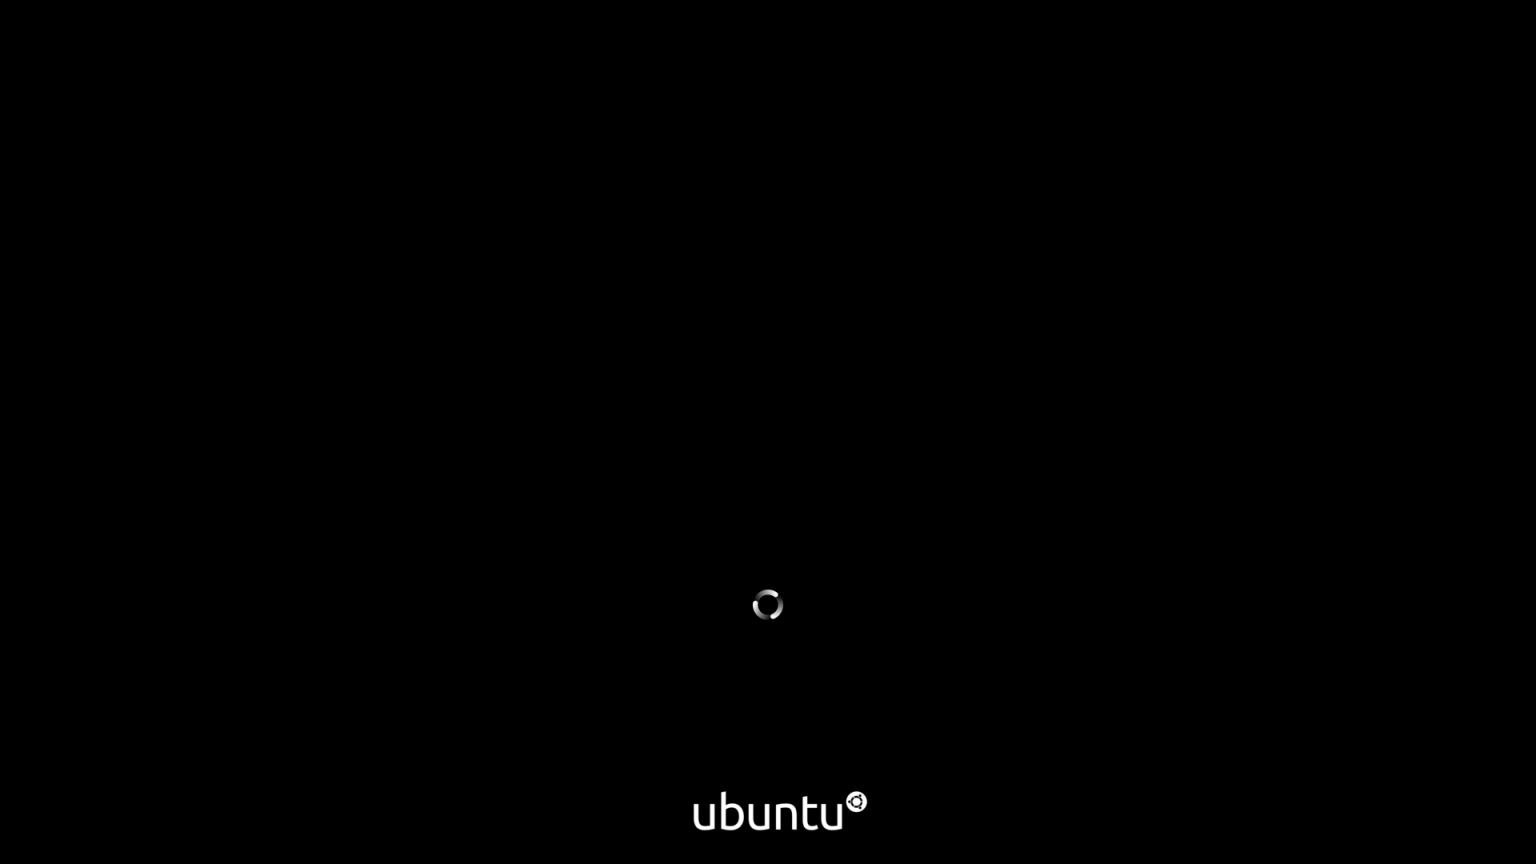 Diem-moi-cua-ubuntu-20.04-2